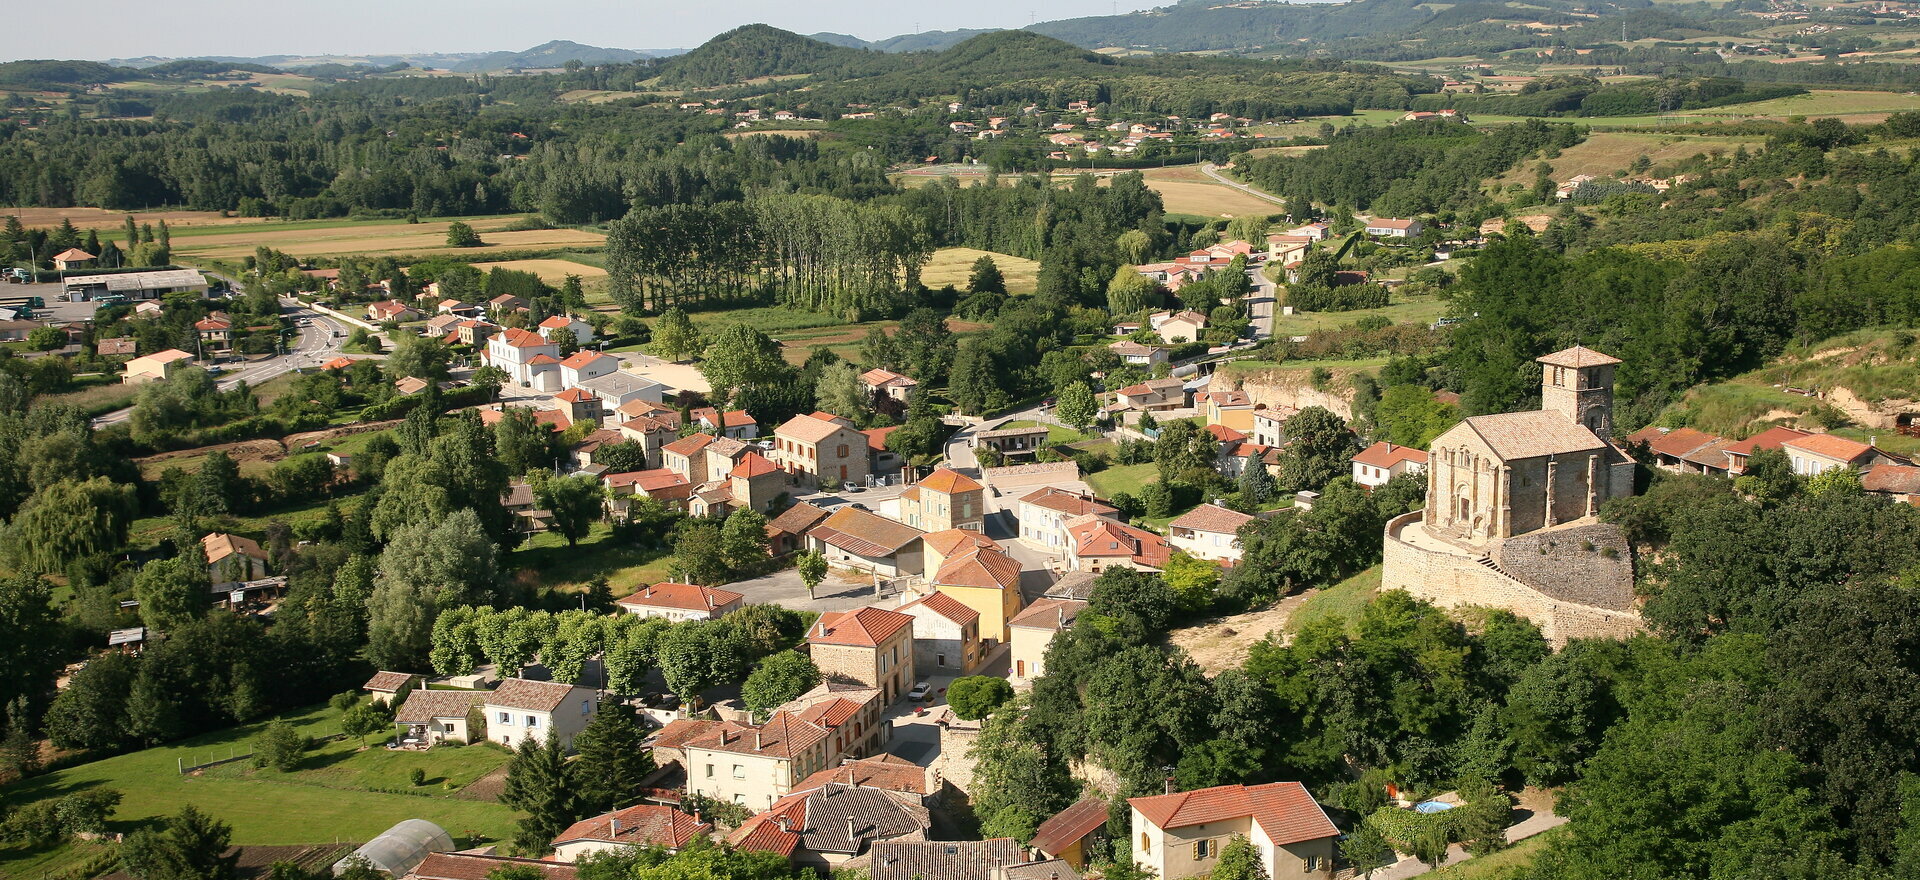 Bienvenue à Chantemerle les Blés dans le 26 au cœur de la Drôme des Collines